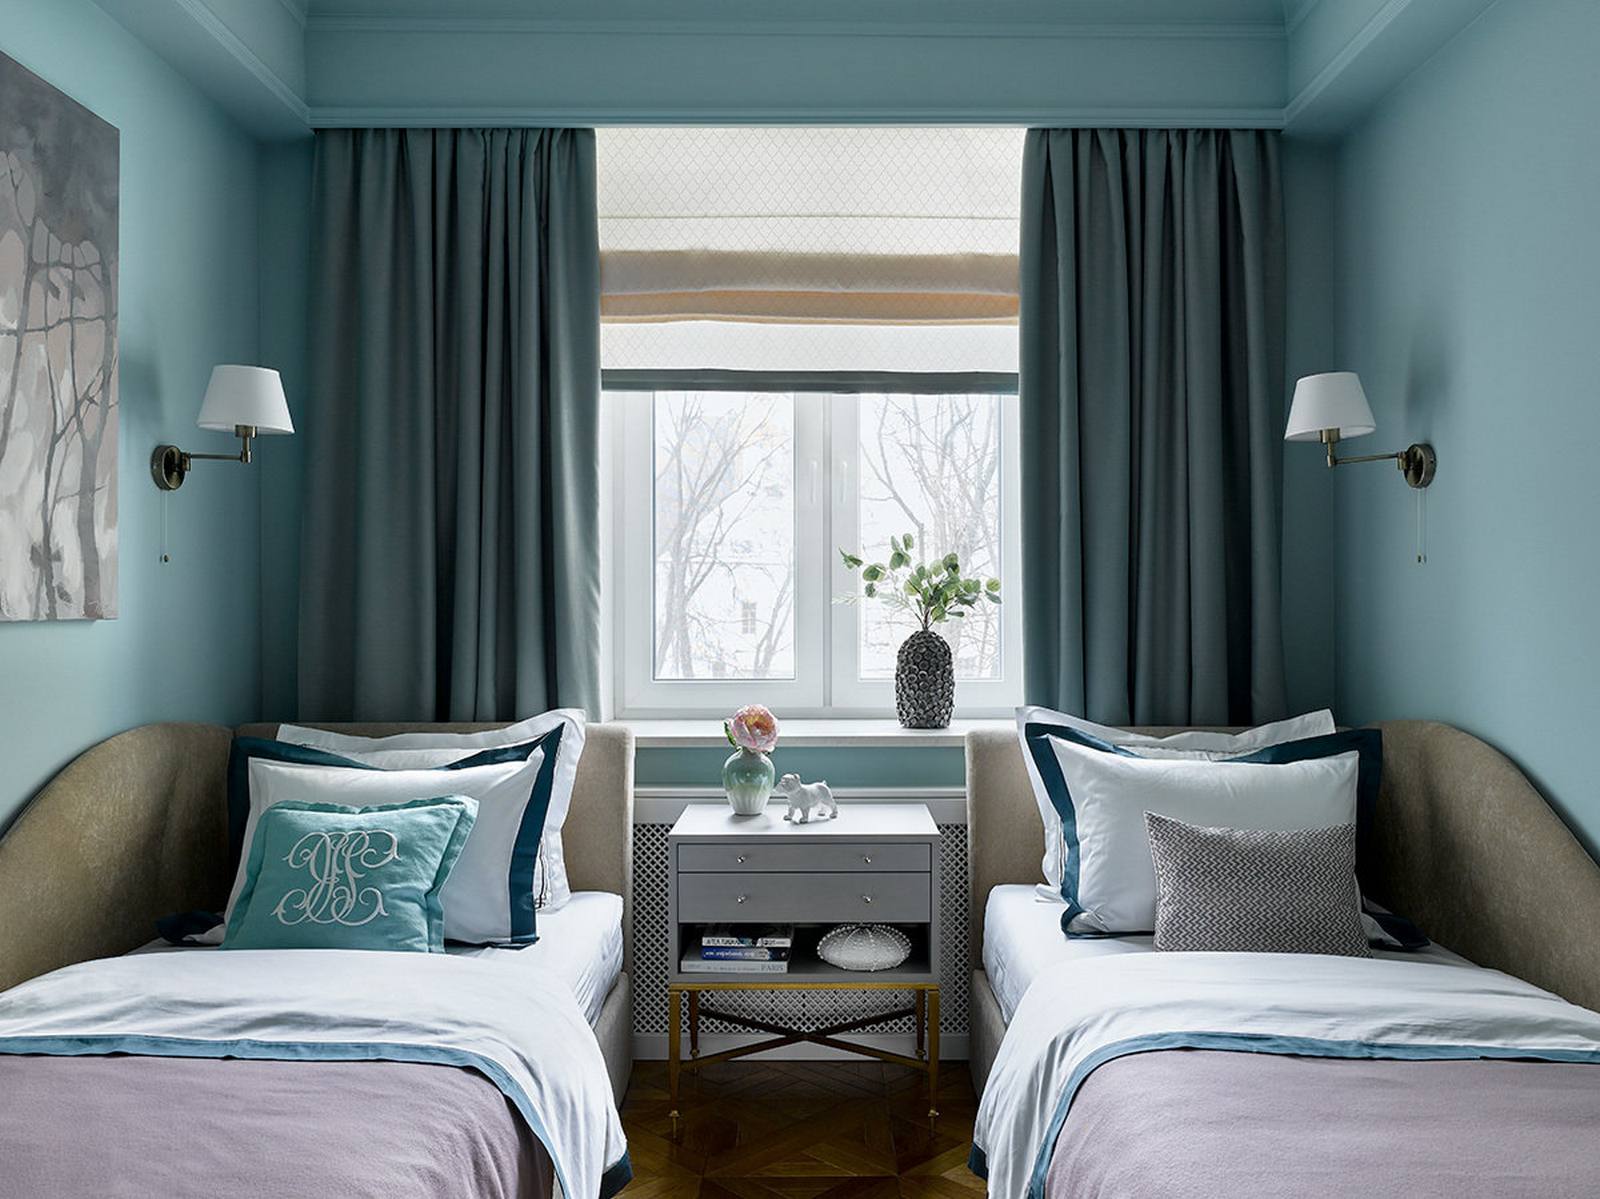 Và bây giờ chúng ta sẽ tham quan phòng ngủ đặc biệt trong căn hộ. Đội ngũ thiết kế đã lựa chọn gam màu xanh lam chủ đạo với nhiều tone đậm nhạt khác nhau để tạo cảm giác yên bình và dễ chịu cho không gian thư giãn.